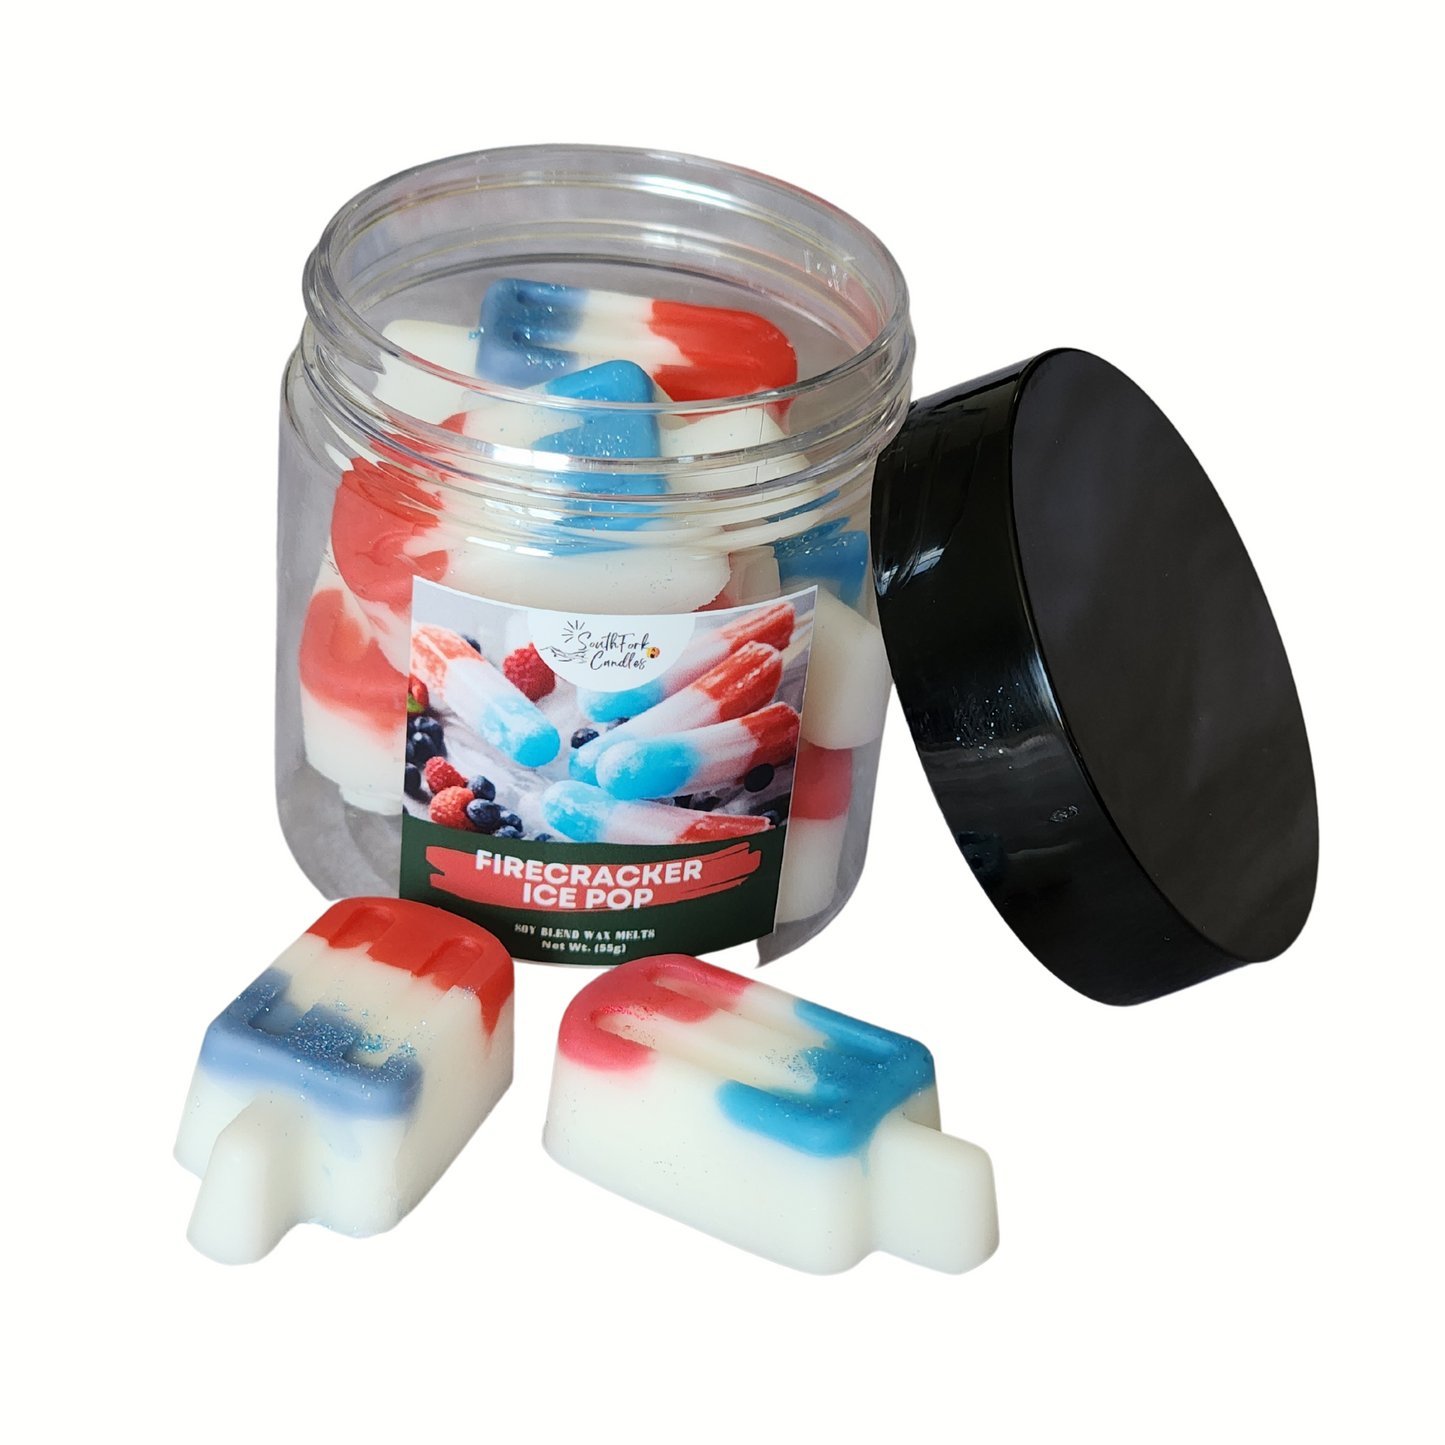 Firecracker Ice Pop Wax Melts - 4oz jar